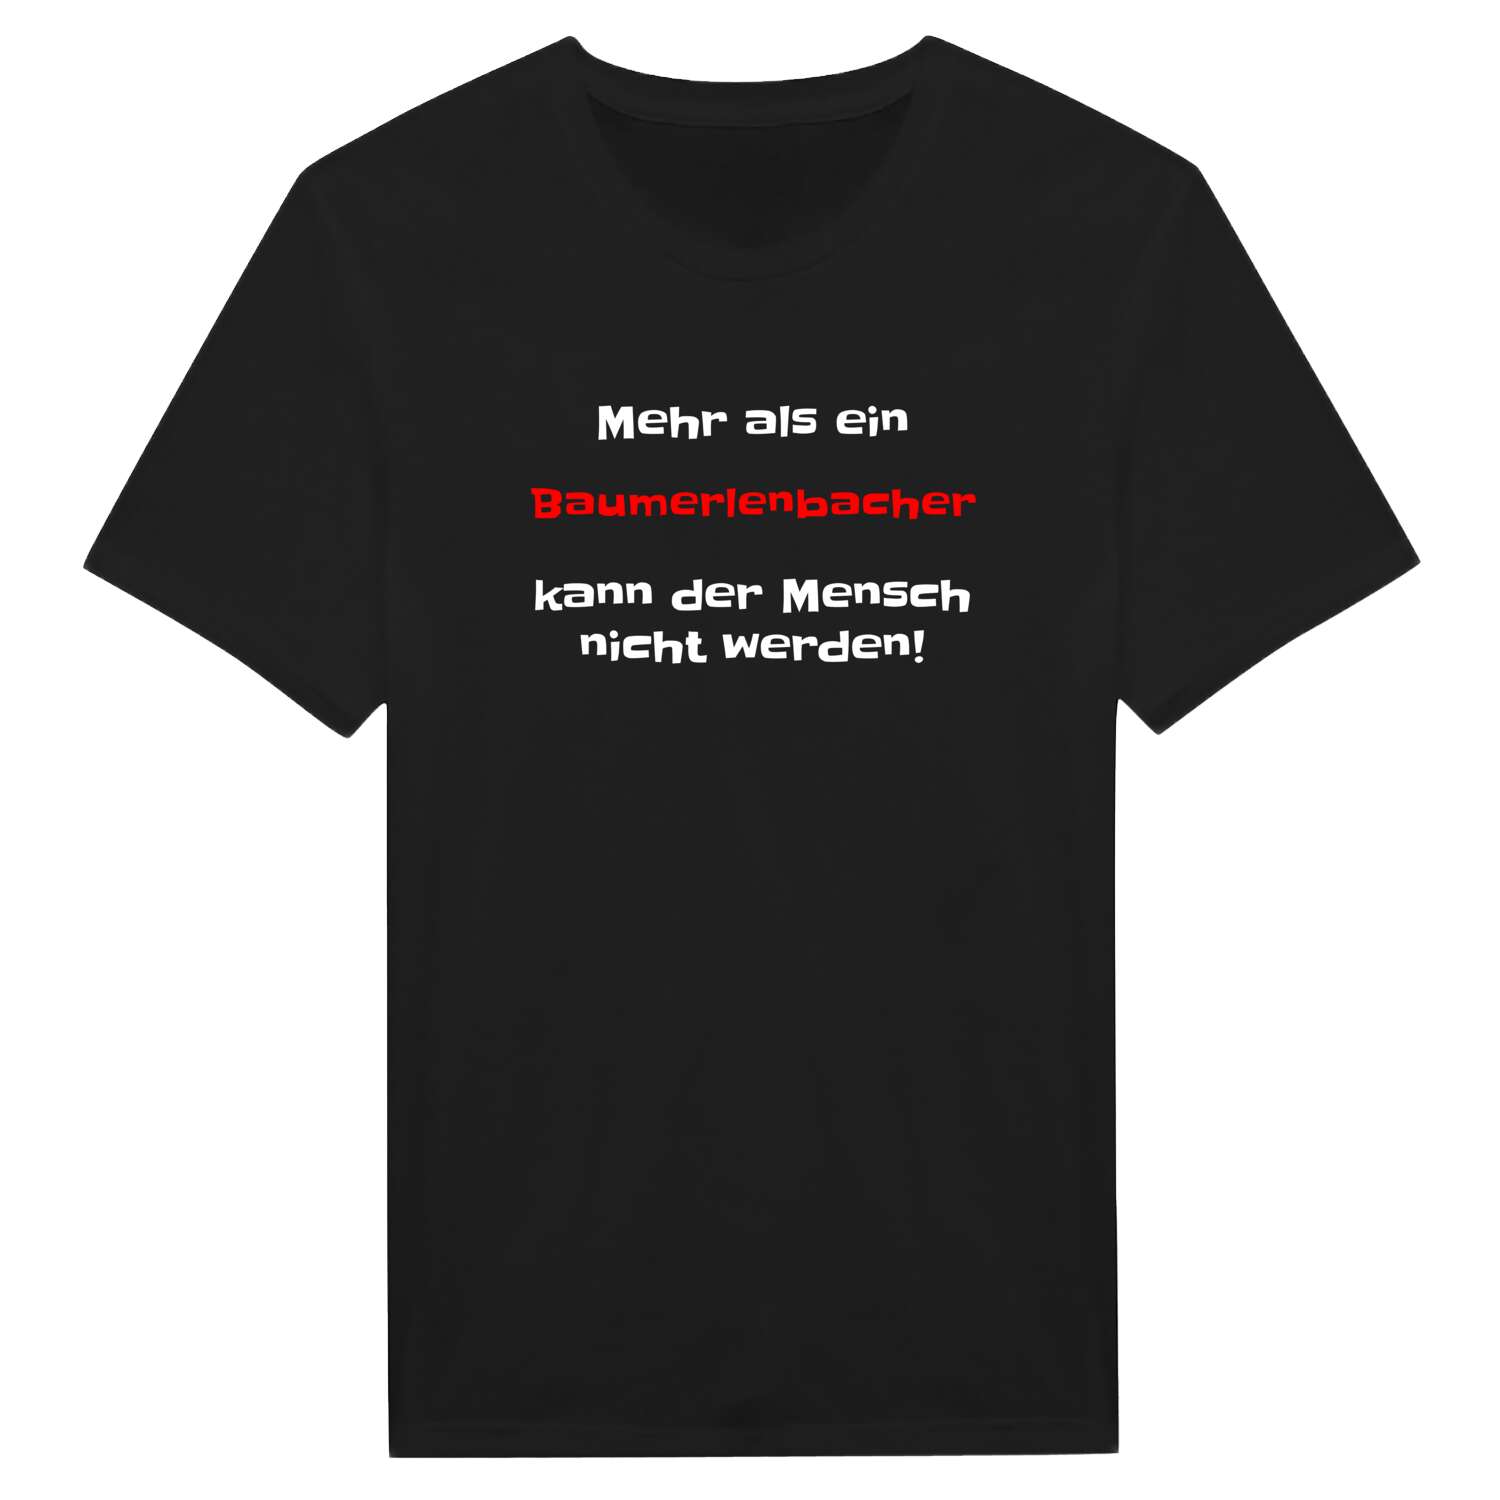 Baumerlenbach T-Shirt »Mehr als ein«